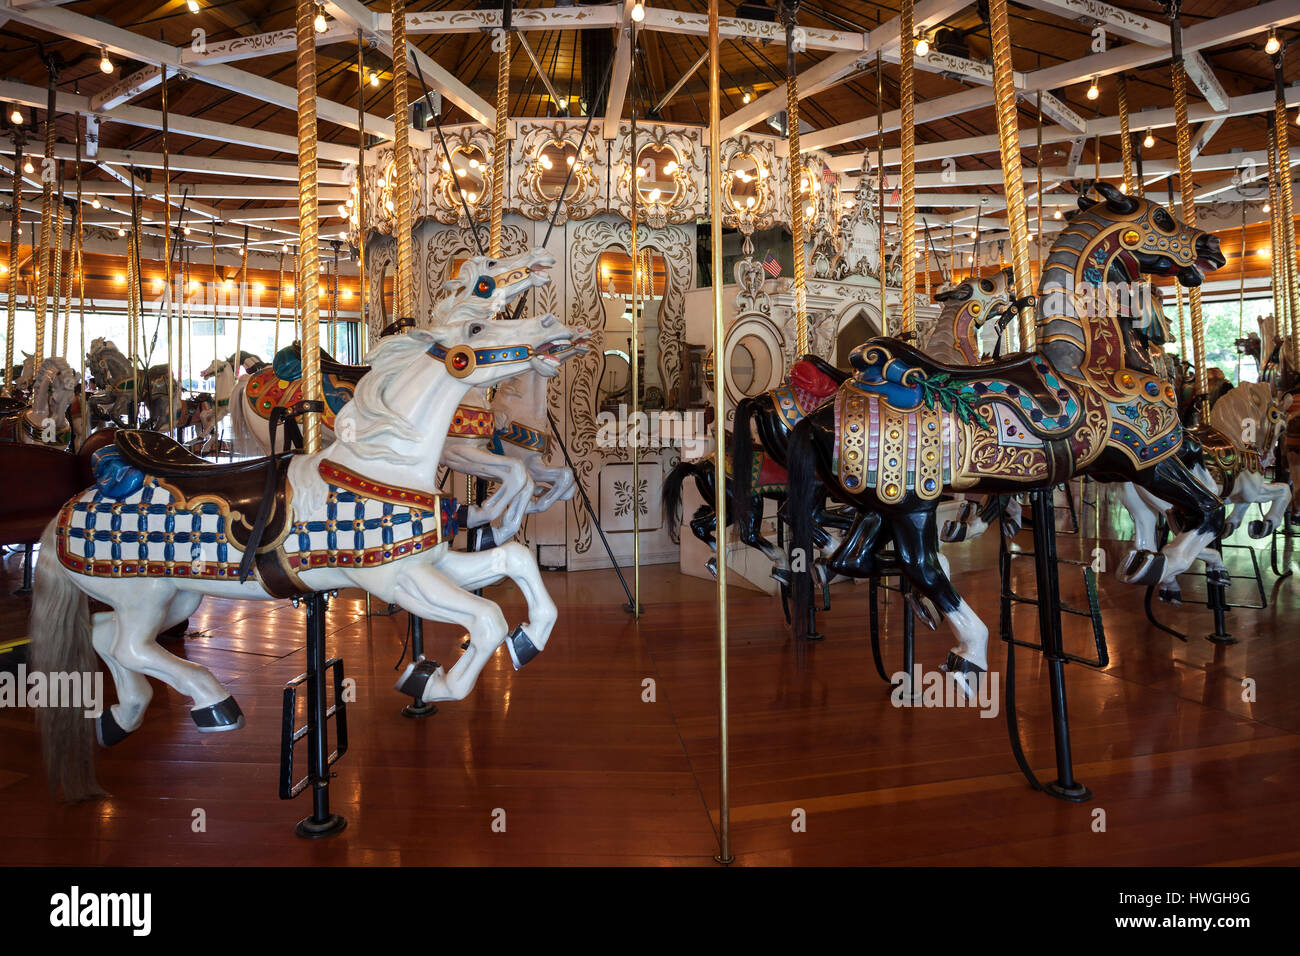 Enfants historique merry-go-round avec les chevaux, Spokane, Washington, USA Banque D'Images